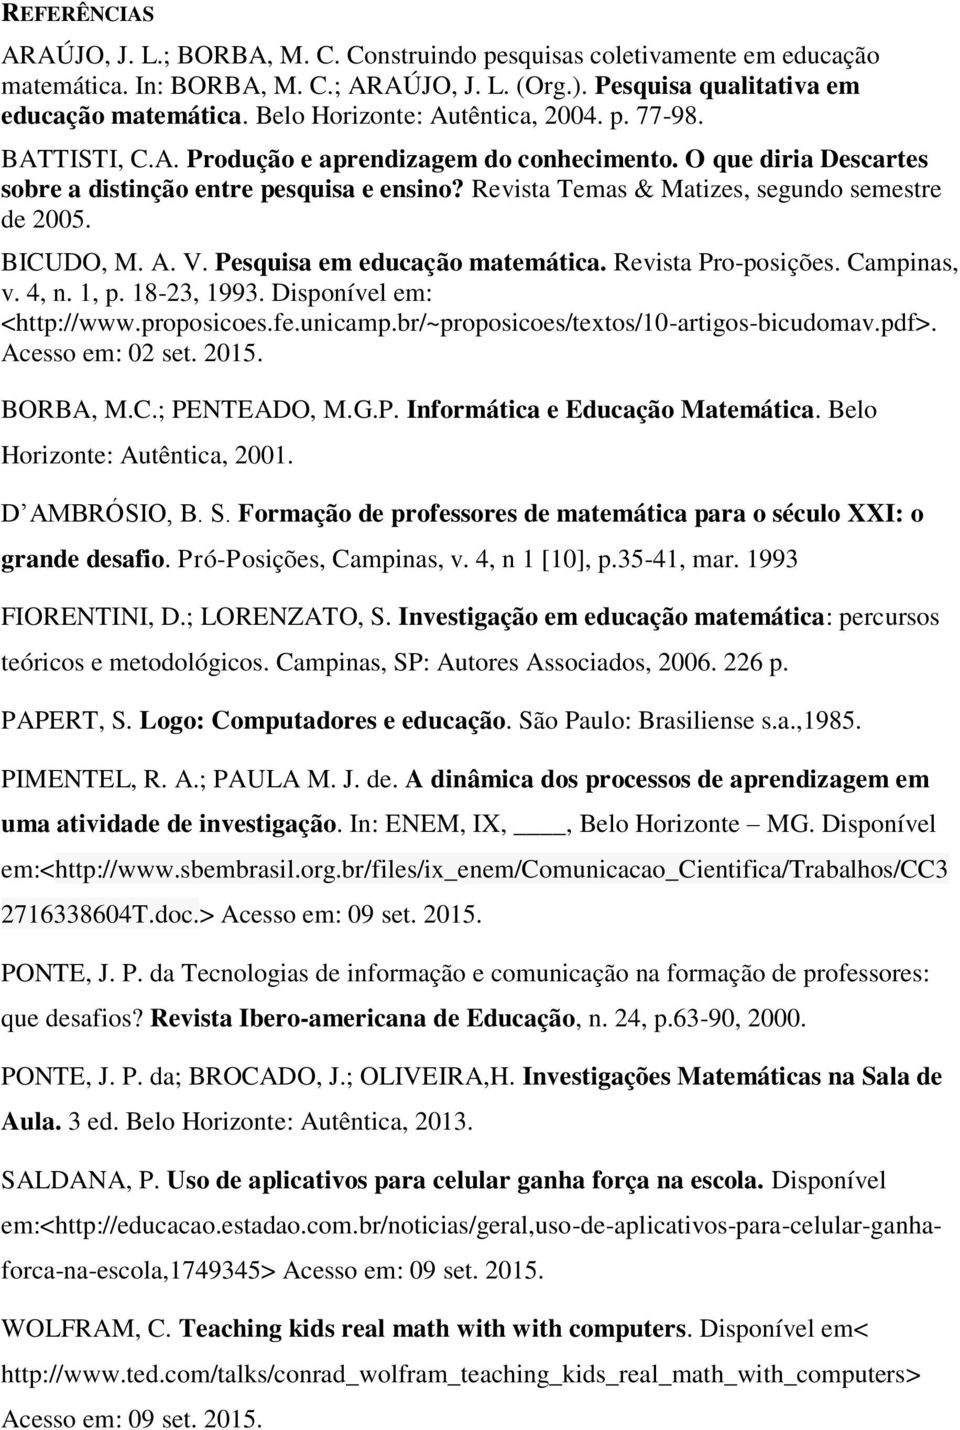 Revista Temas & Matizes, segundo semestre de 2005. BICUDO, M. A. V. Pesquisa em educação matemática. Revista Pro-posições. Campinas, v. 4, n. 1, p. 18-23, 1993. Disponível em: <http://www.proposicoes.